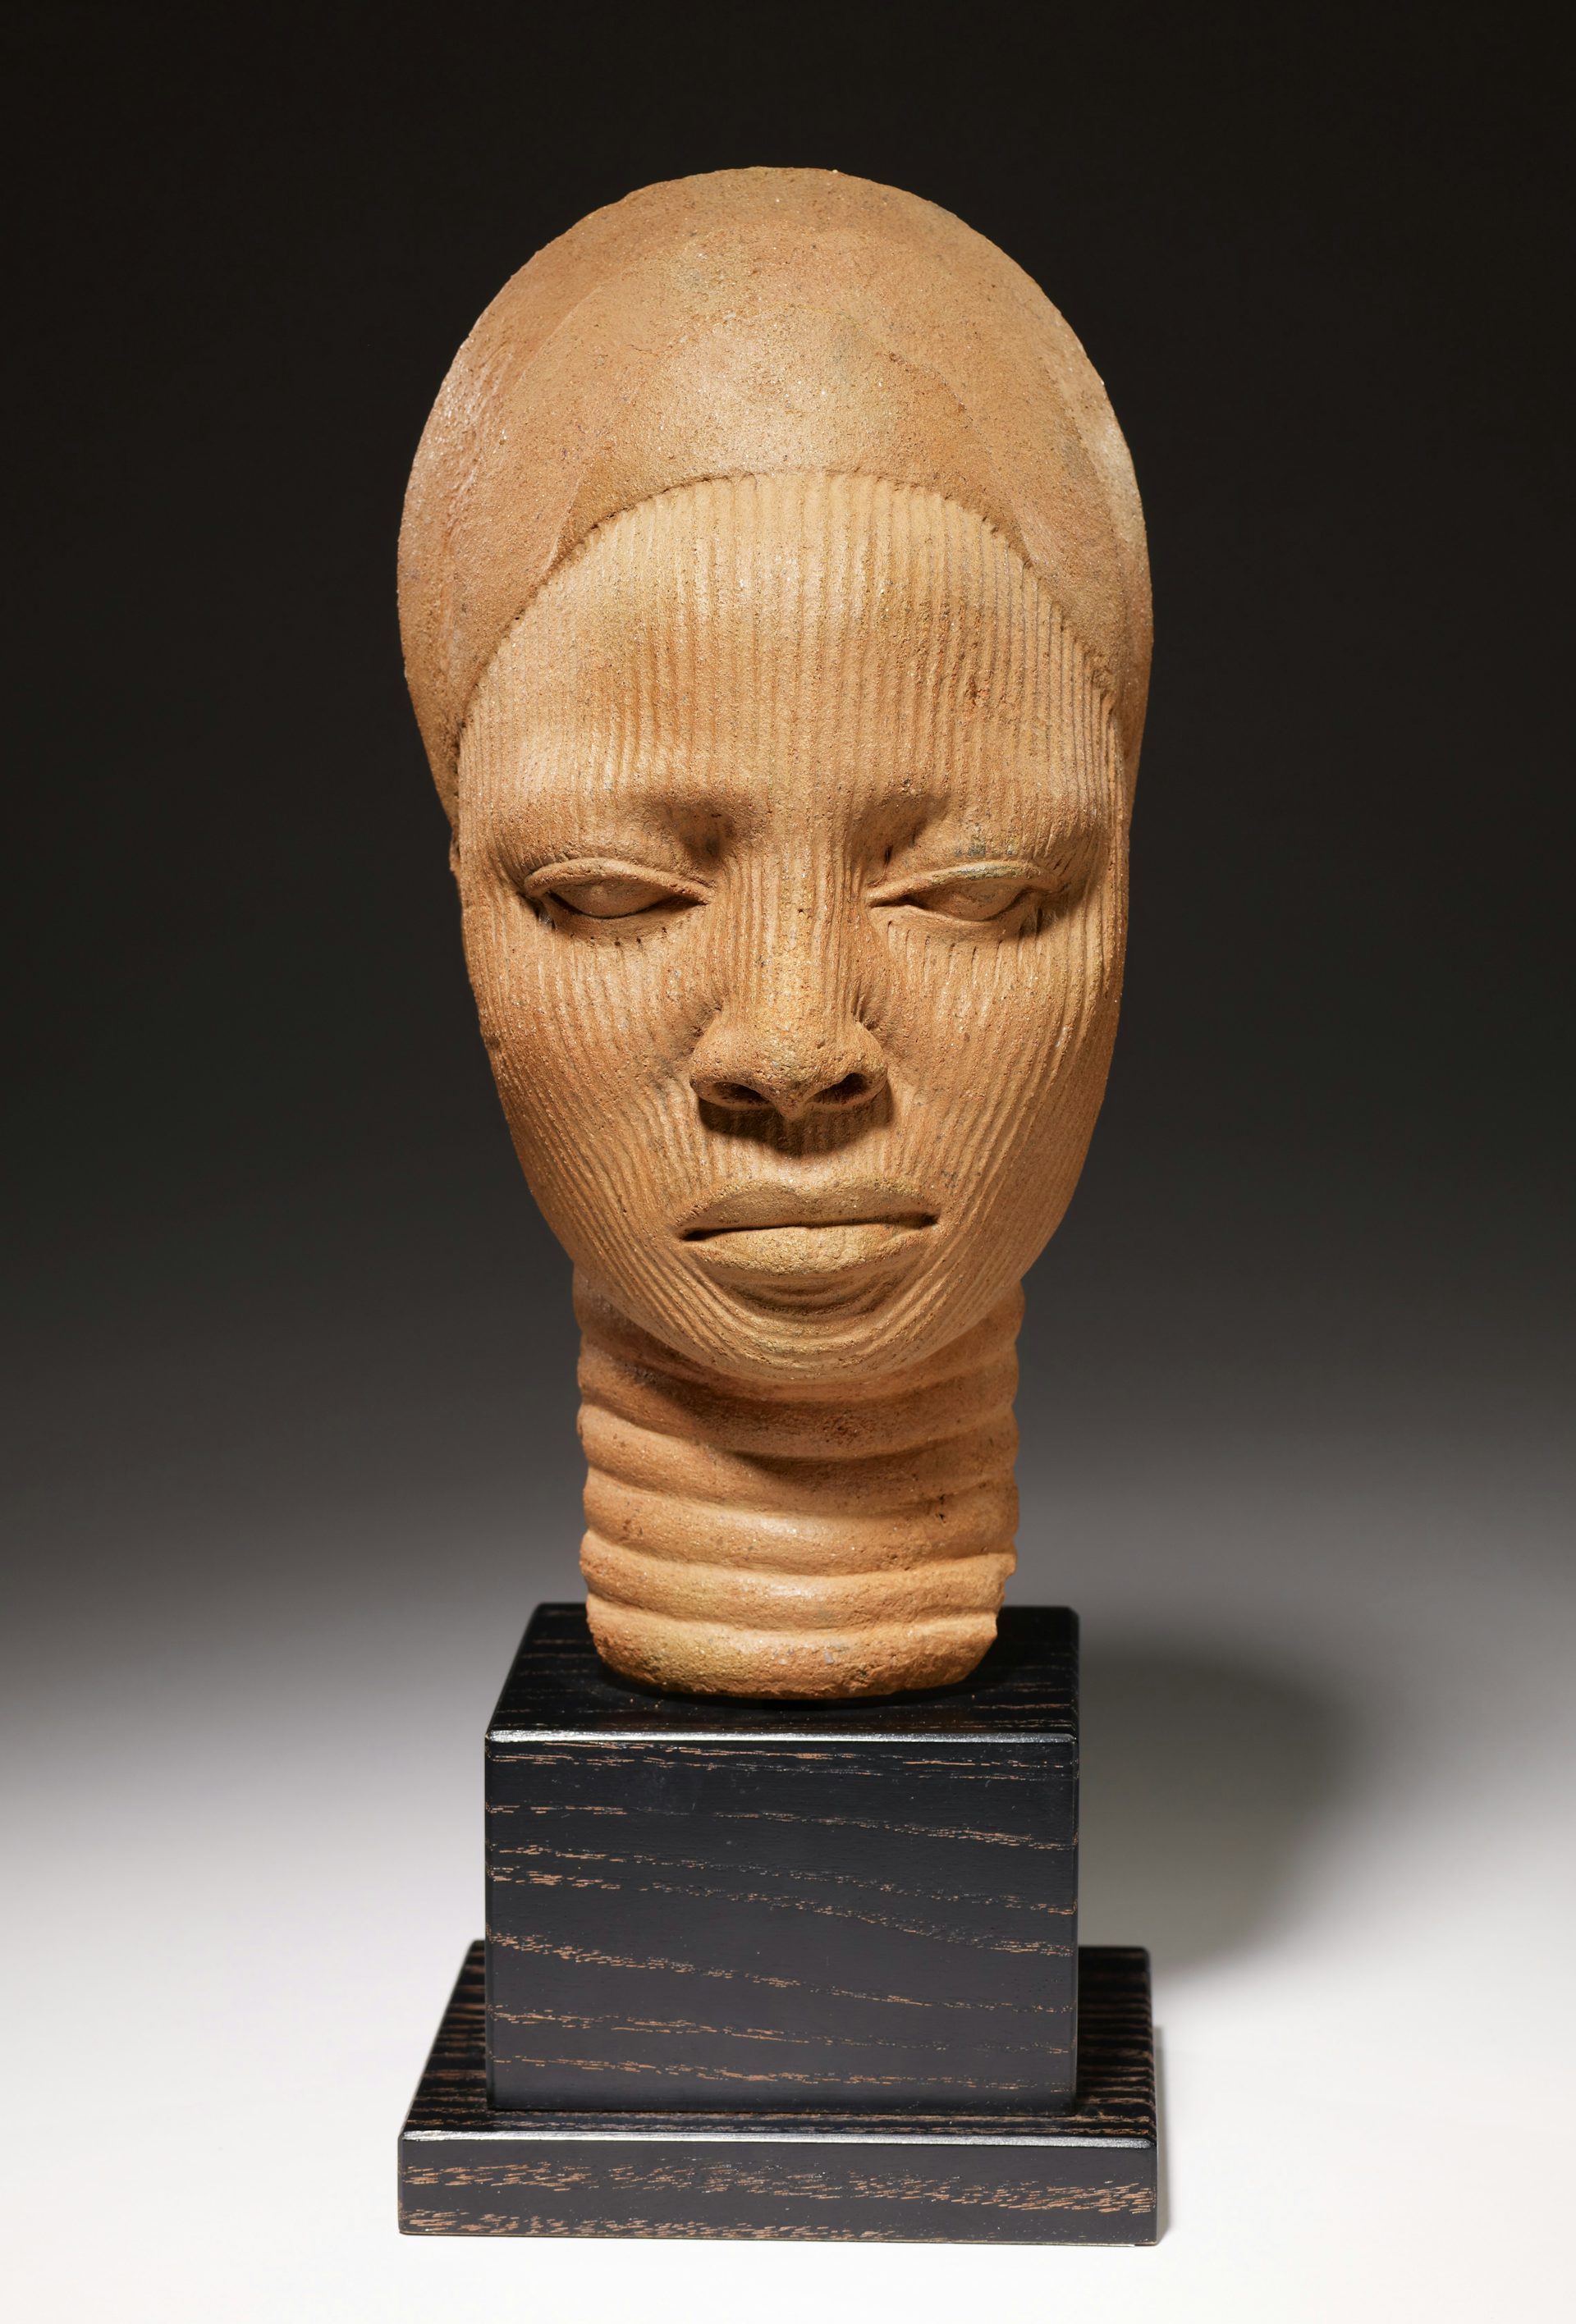 Shrine head by Yoruba artist (12th-14th century).